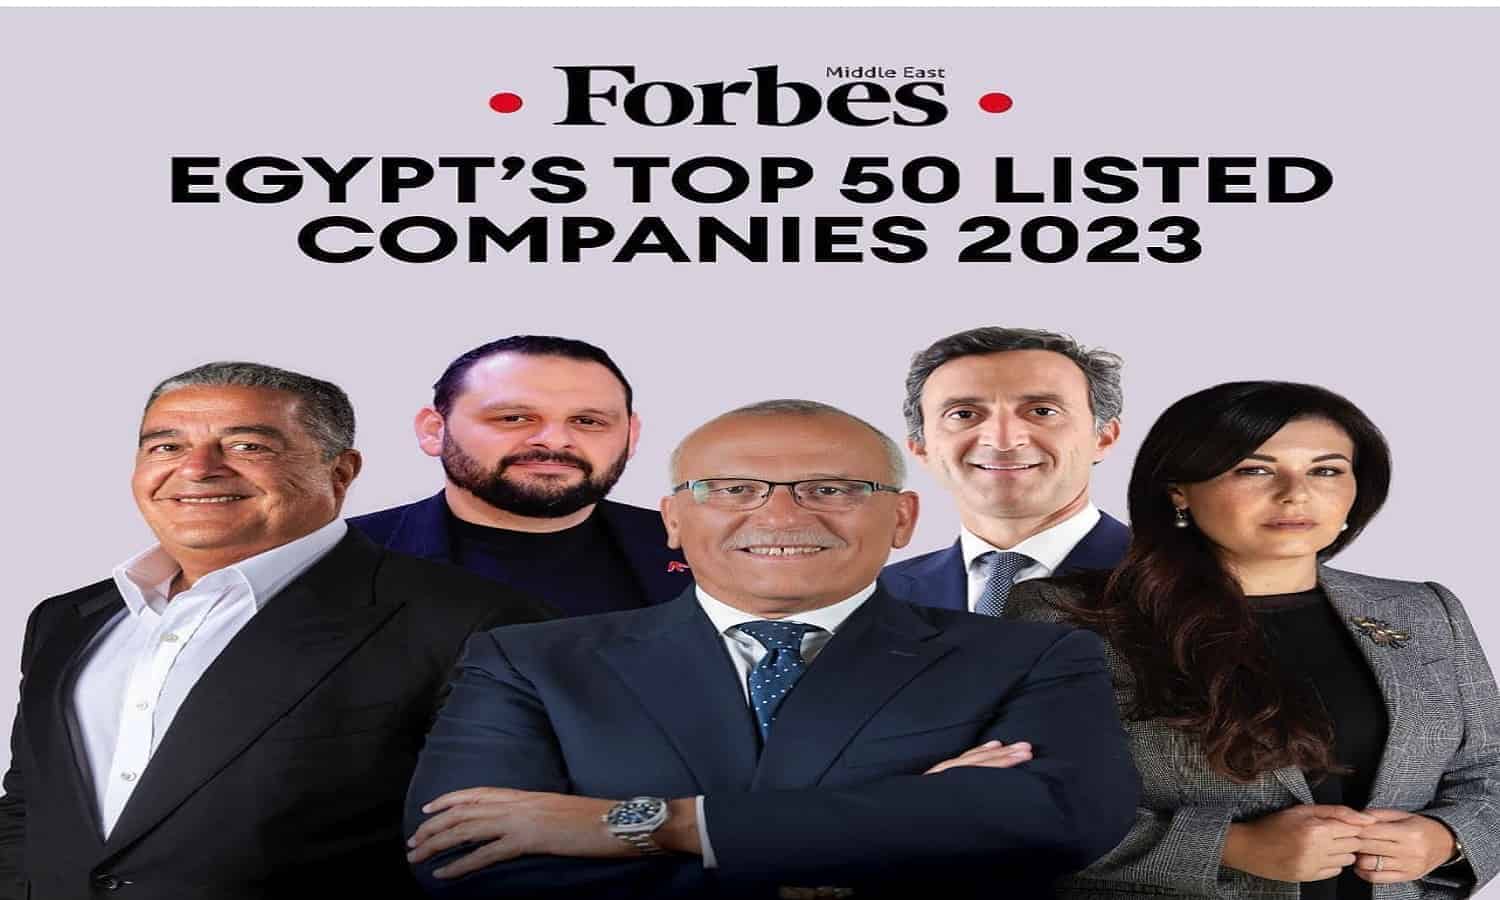 فوربس: كونتكت المالية ضمن أقوى الشركات بمصر2023
